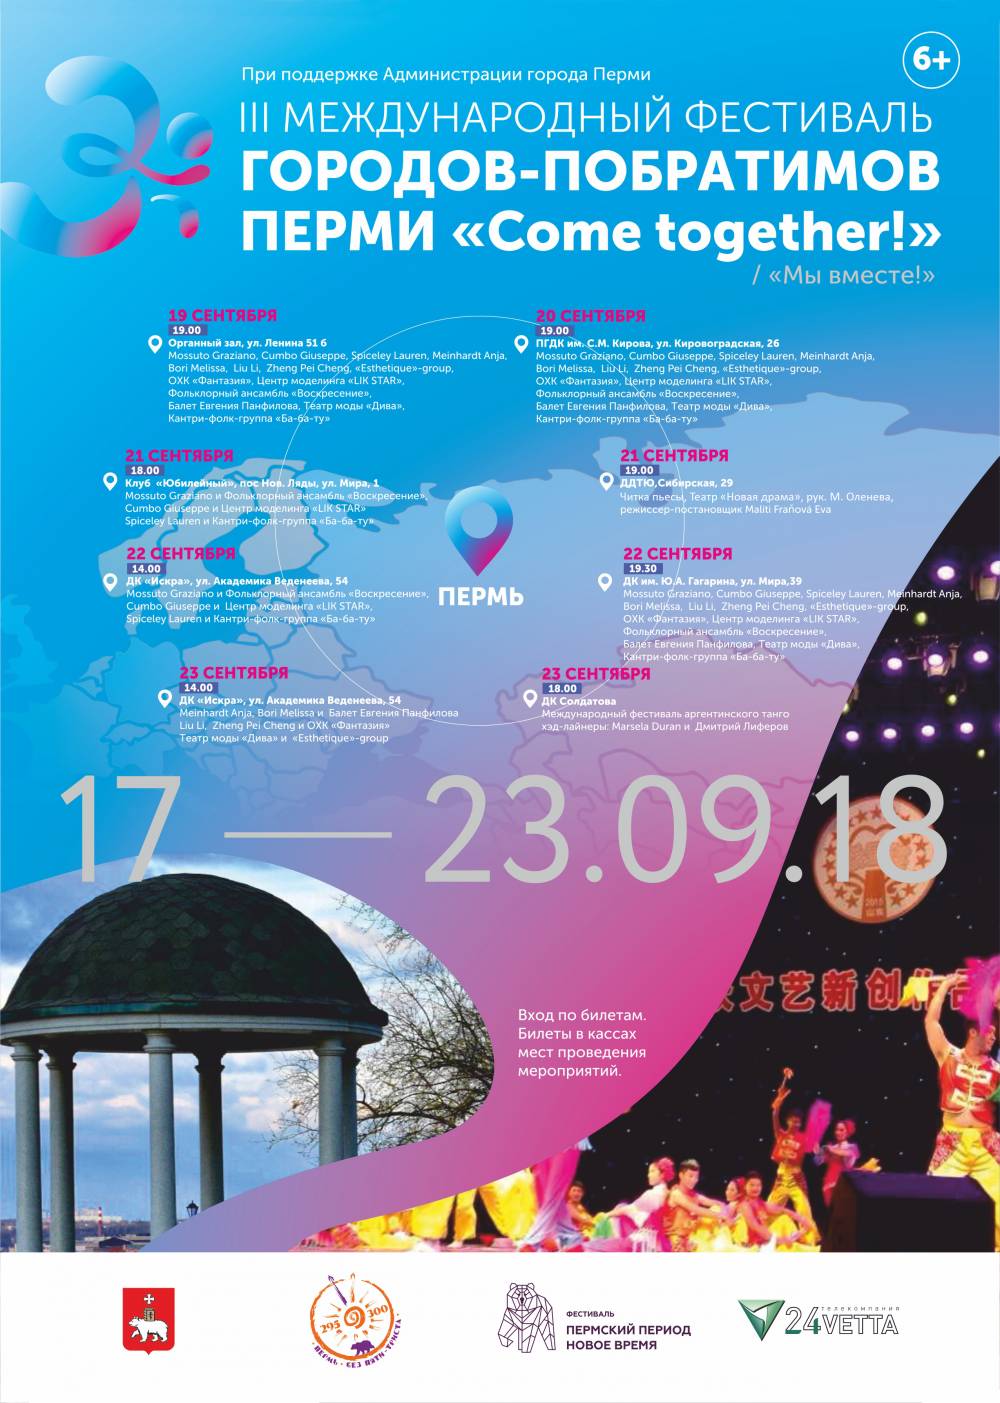 Пермь примет III Международный фестиваль городов-побратимов